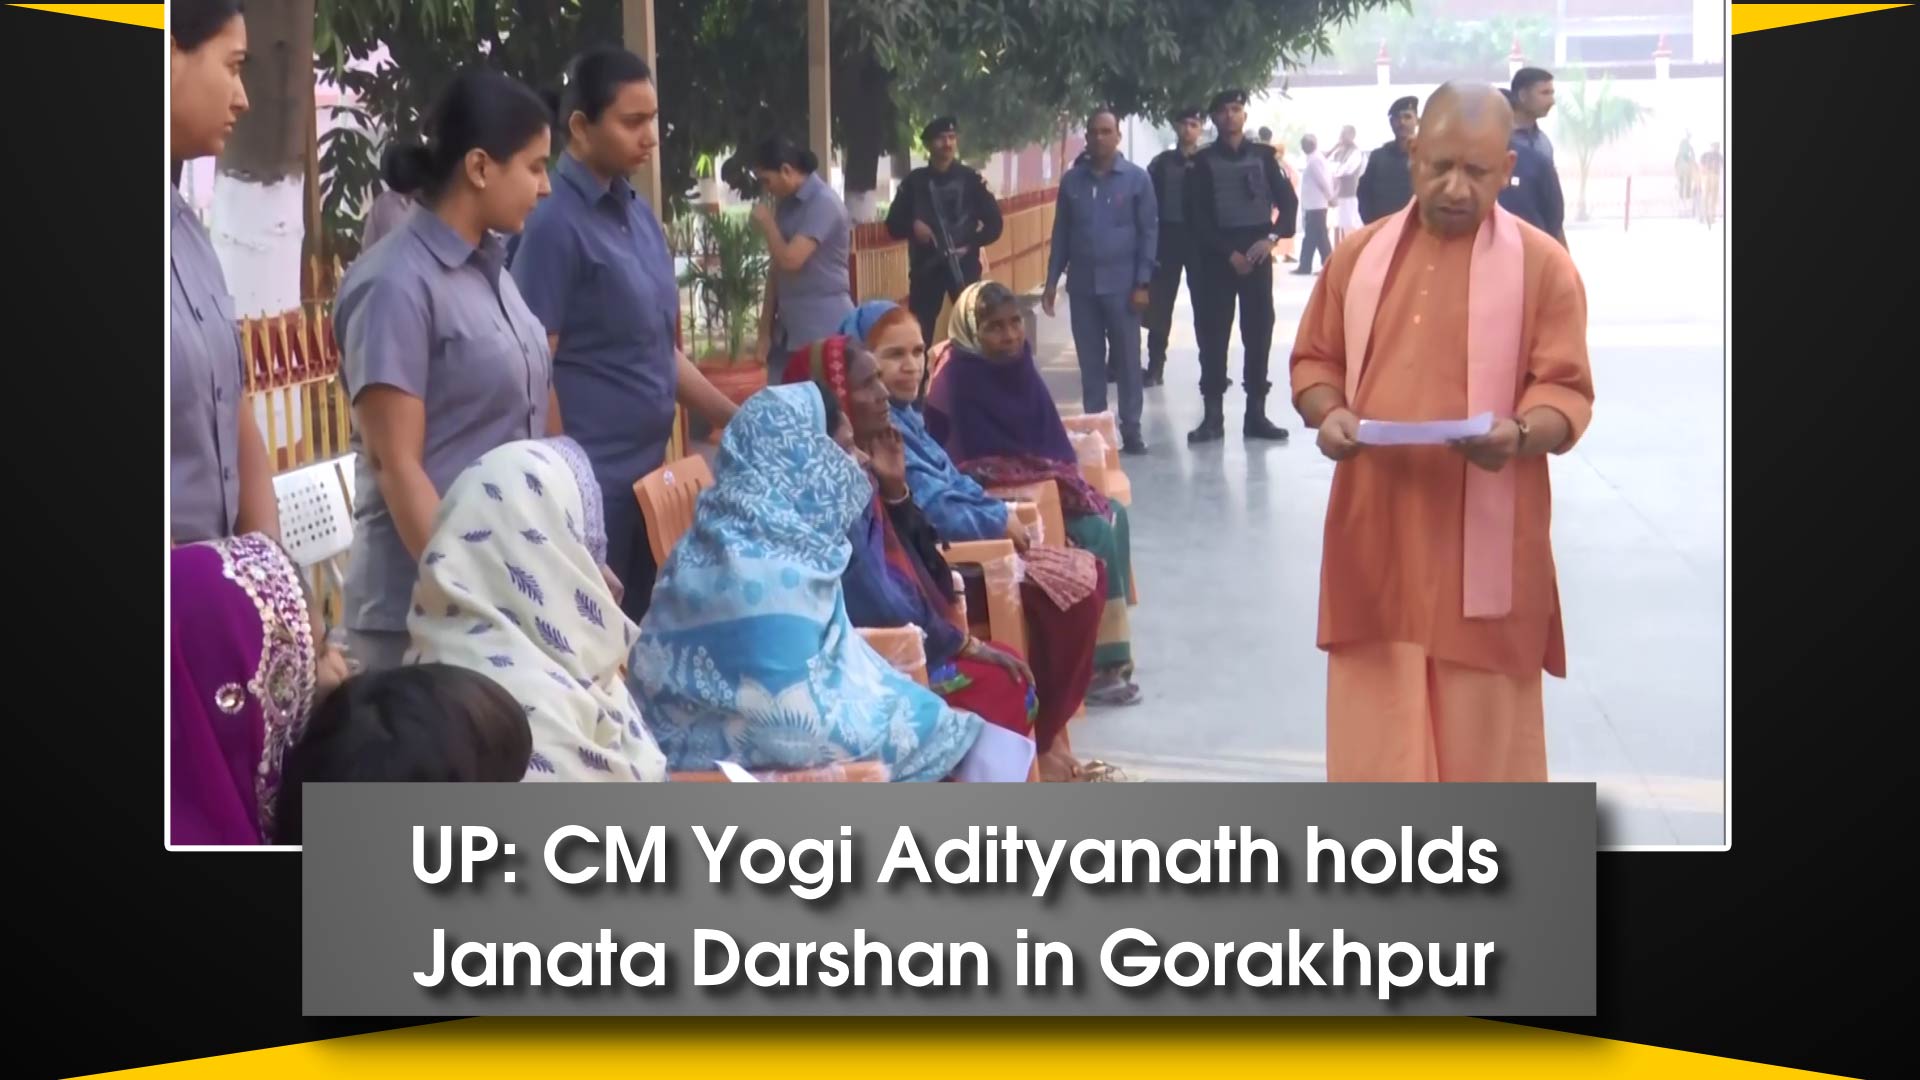 UP: CM Yogi Adityanath holds Janata Darshan in Gorakhpur